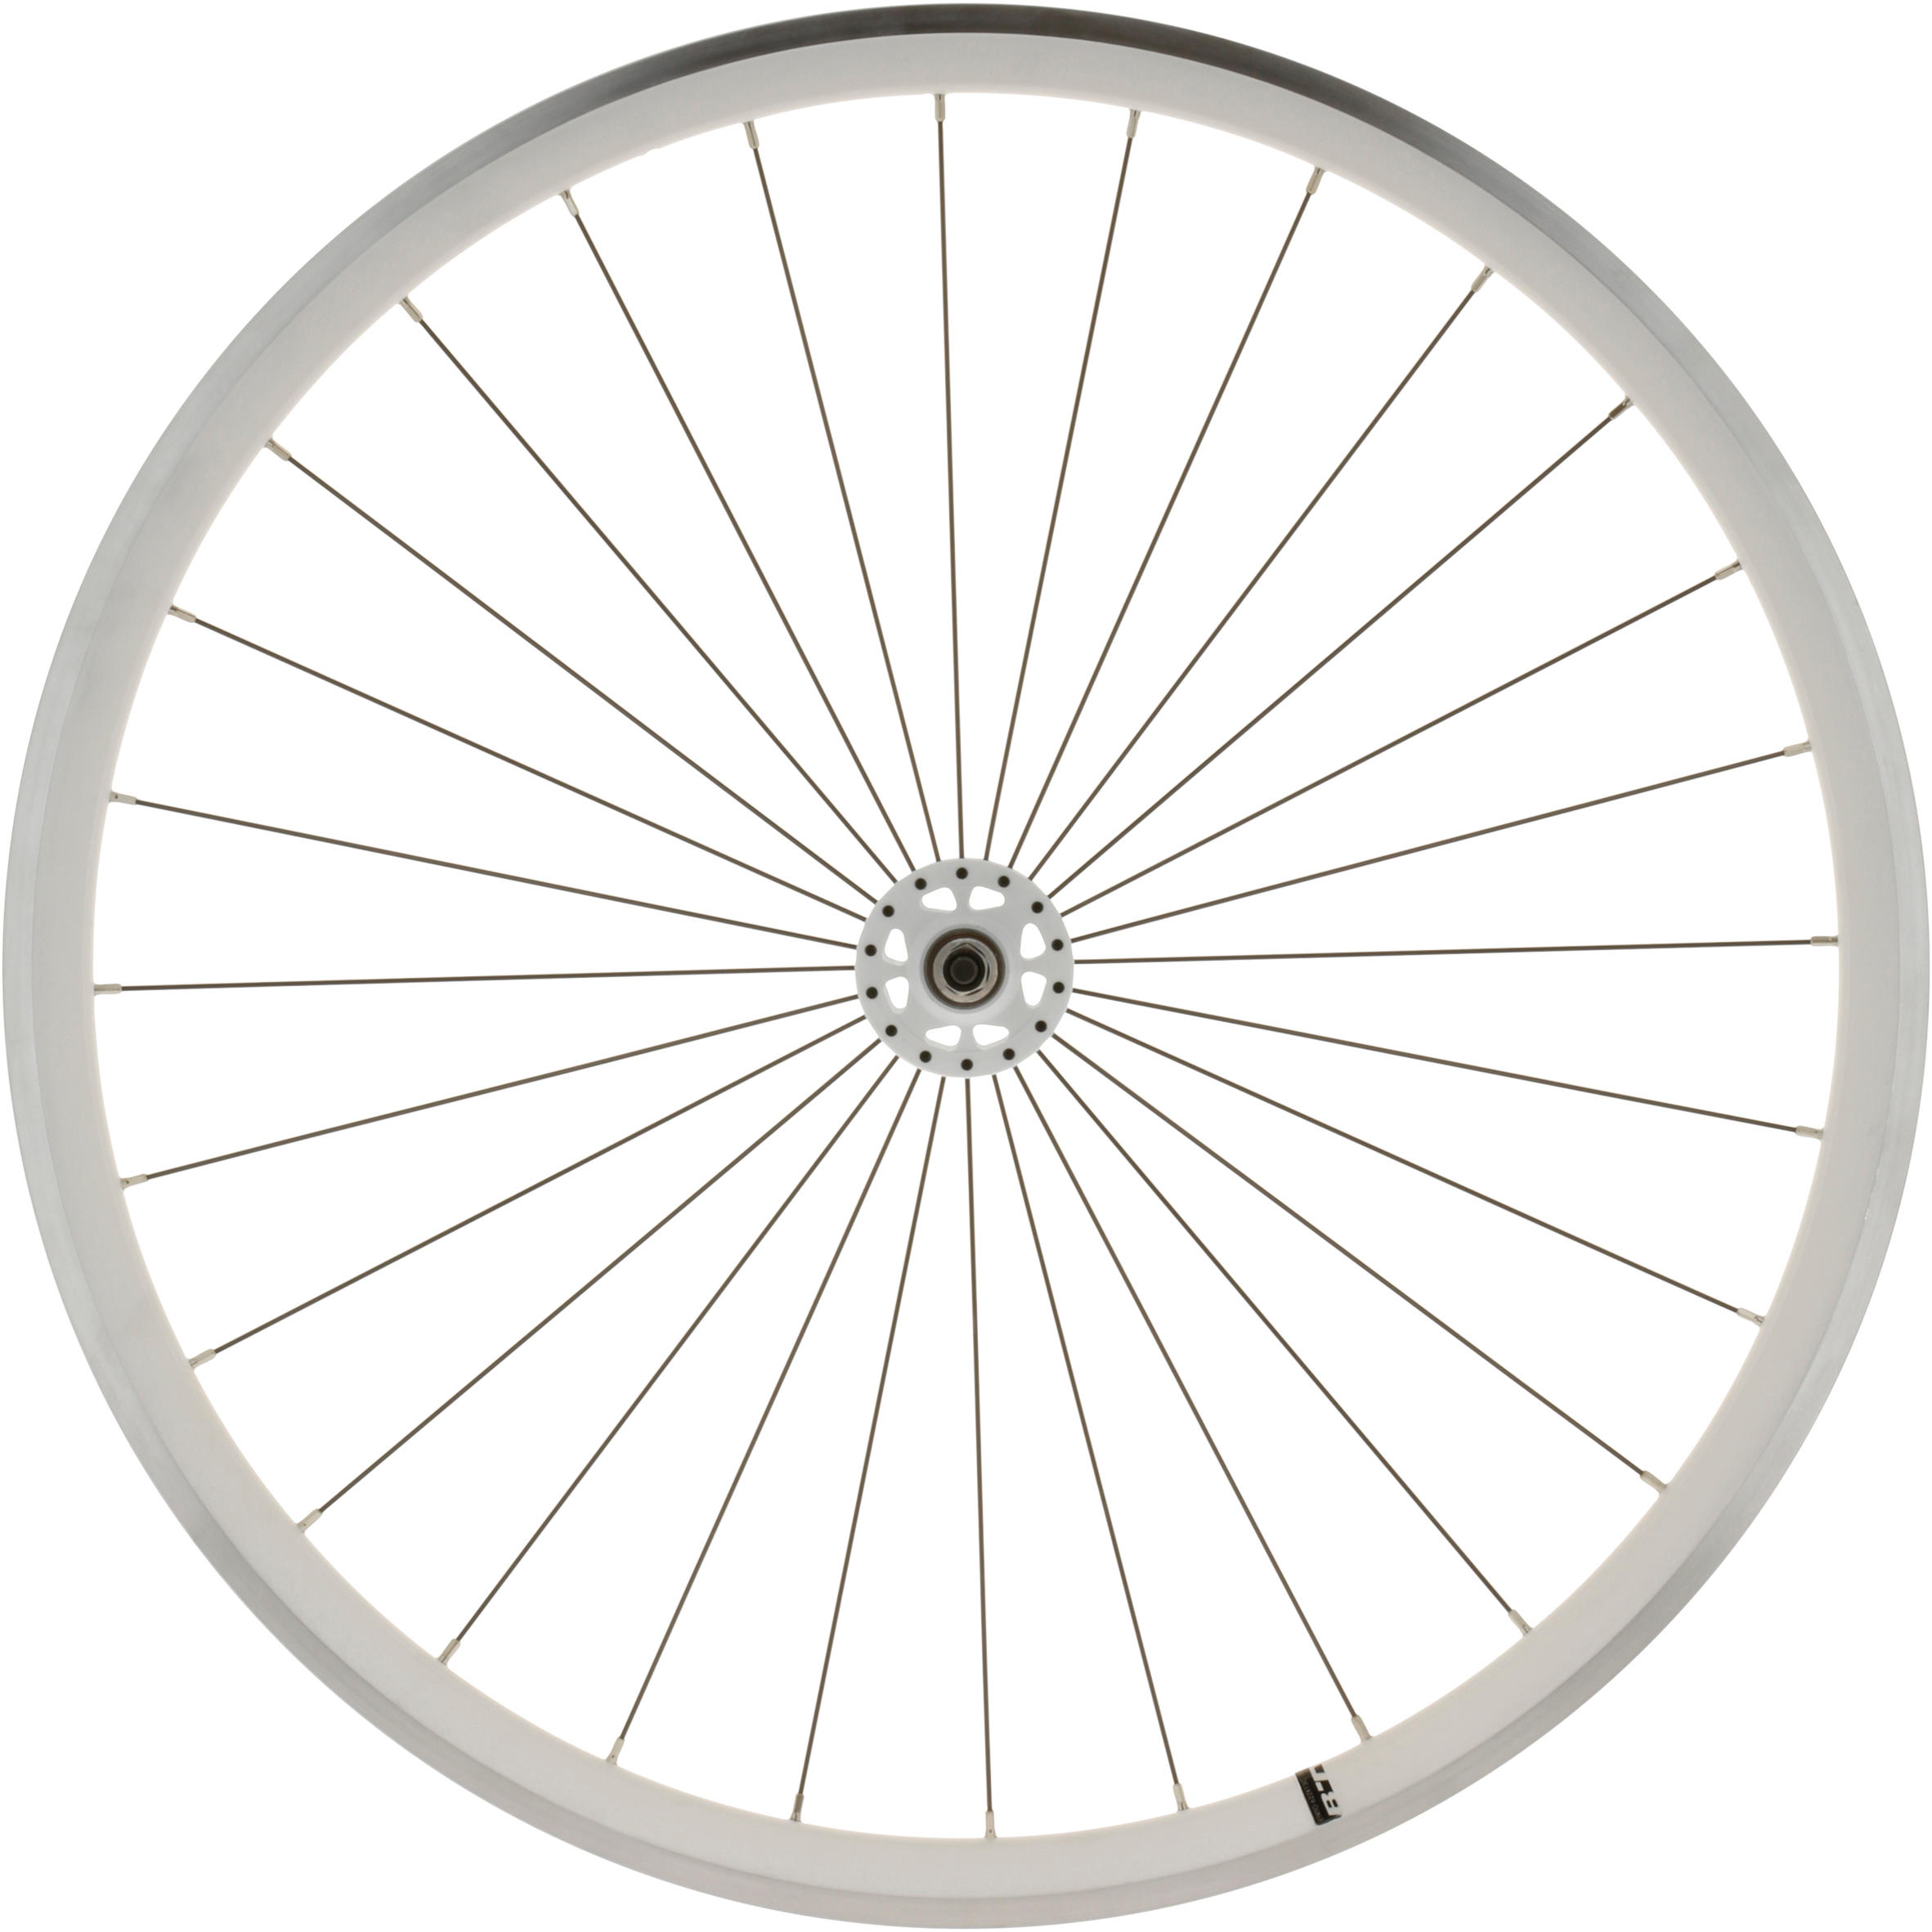 ELOPS 700 Fixie Front Wheel - White